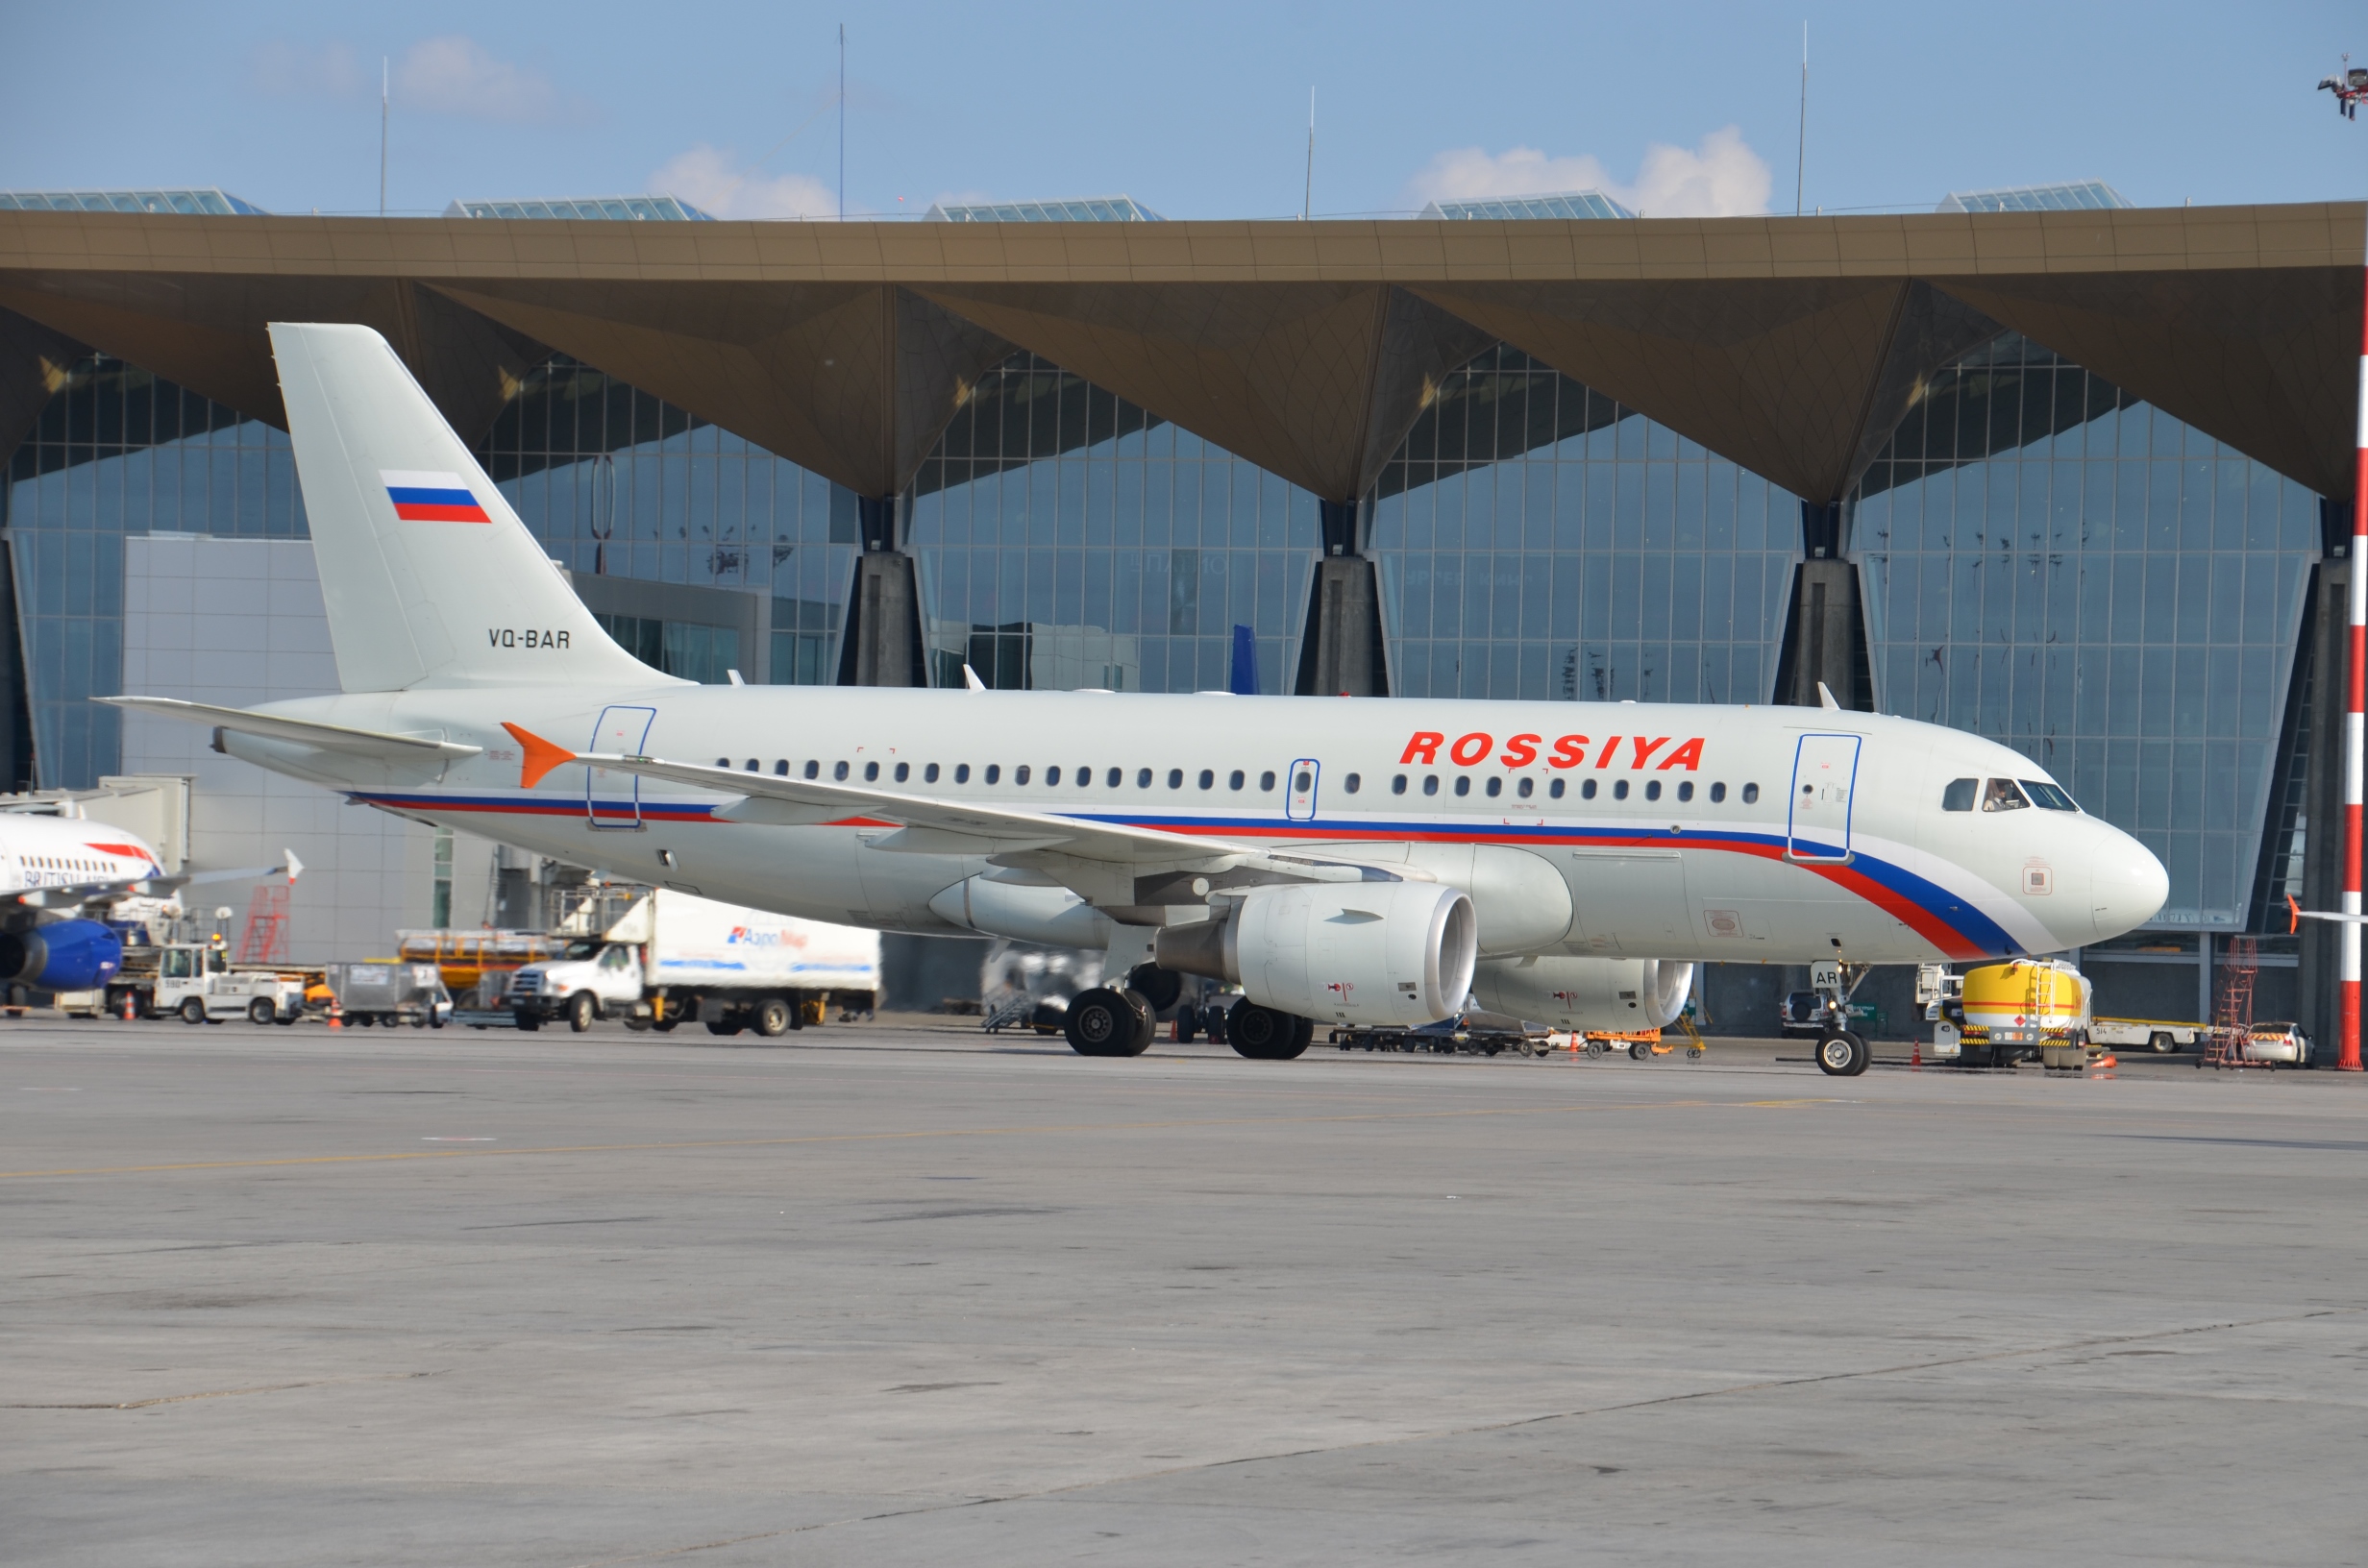 Авиакомпания «Россия», базовый перевозчик Пулково, подтвердила звание самой пунктуальной в стране